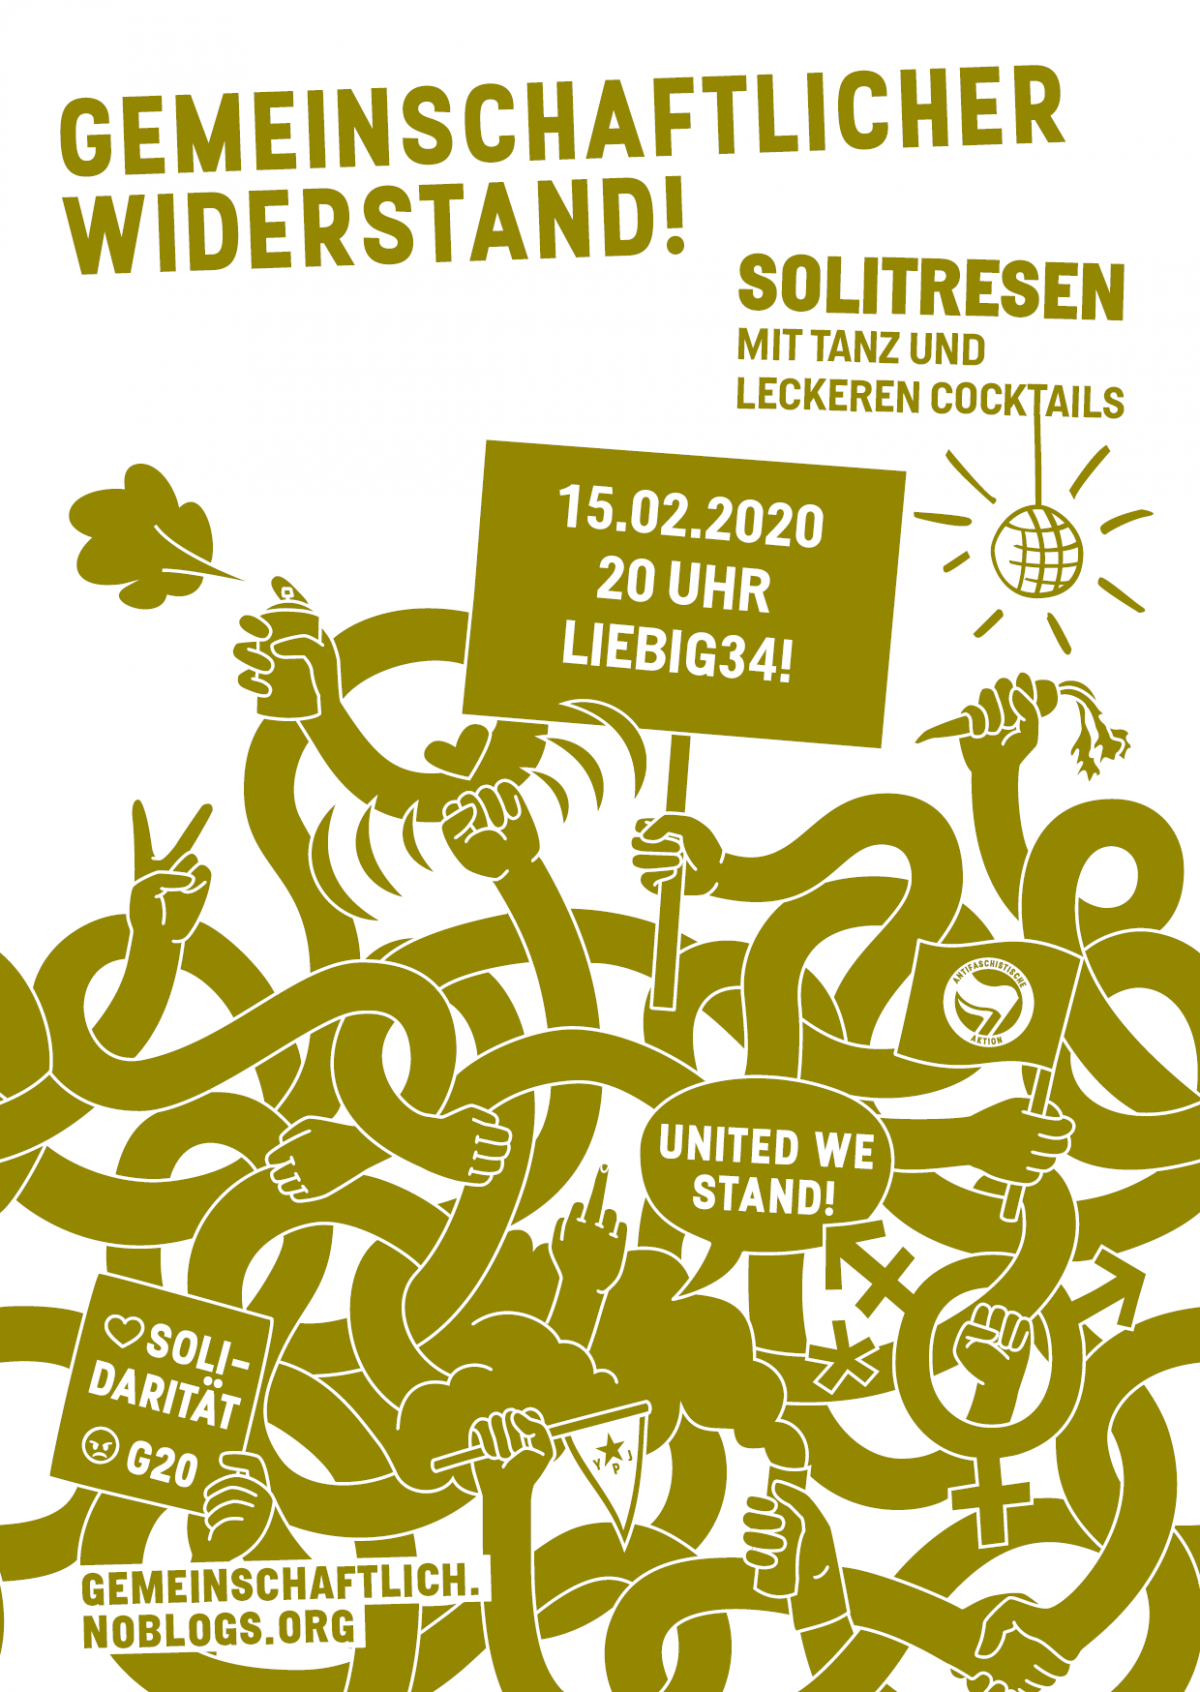 15.2.2020 „Gemeinschaftlicher Widerstand“ Solitresen in Berlin